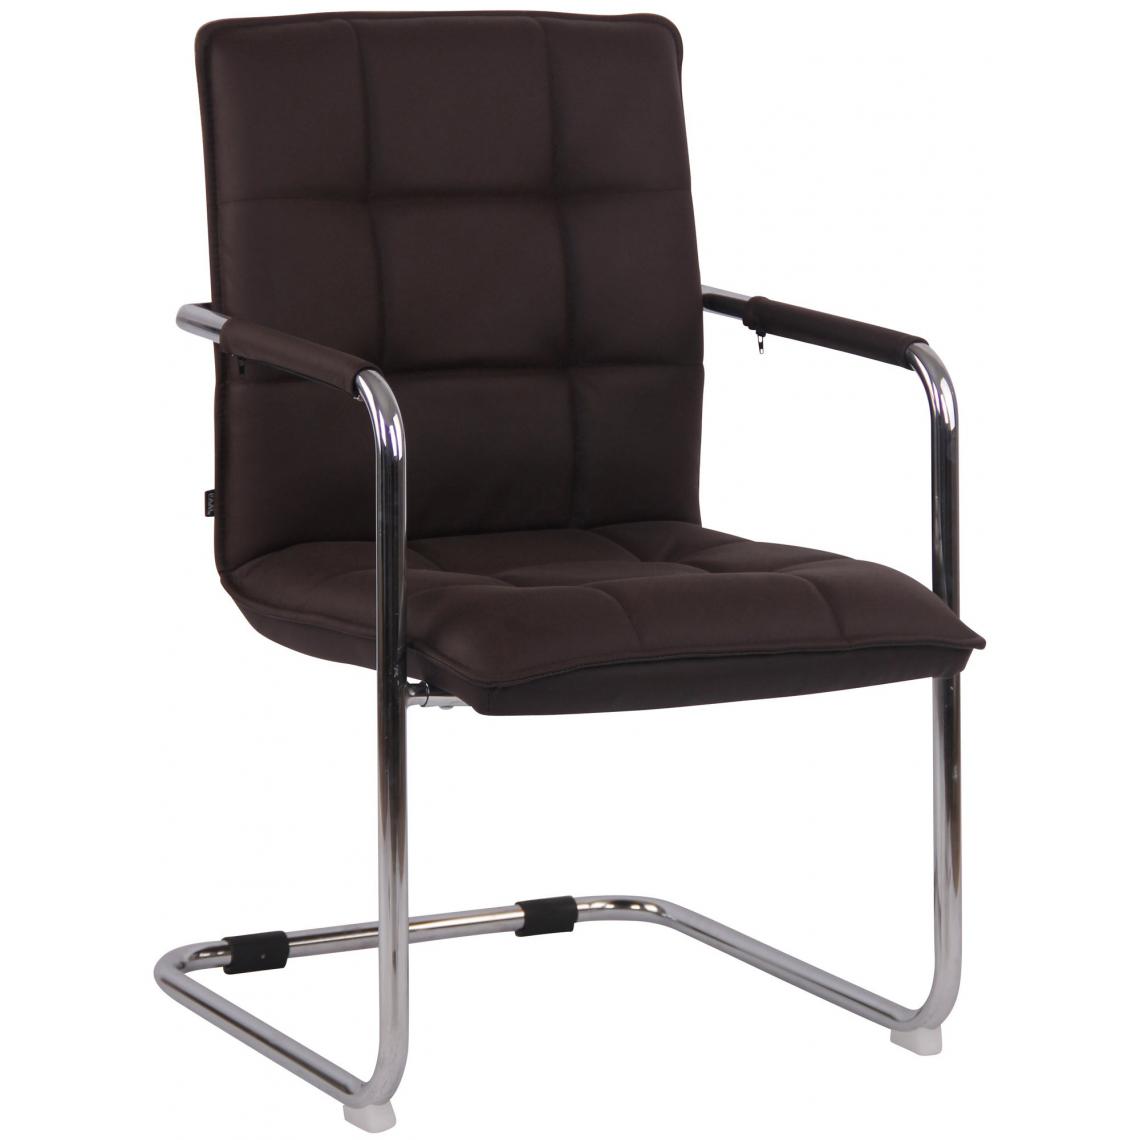 Decoshop26 - Chaise visiteur fauteuil de bureau sans roulettes en cuir marron foncé cadre métal BUR10476 - Bureaux